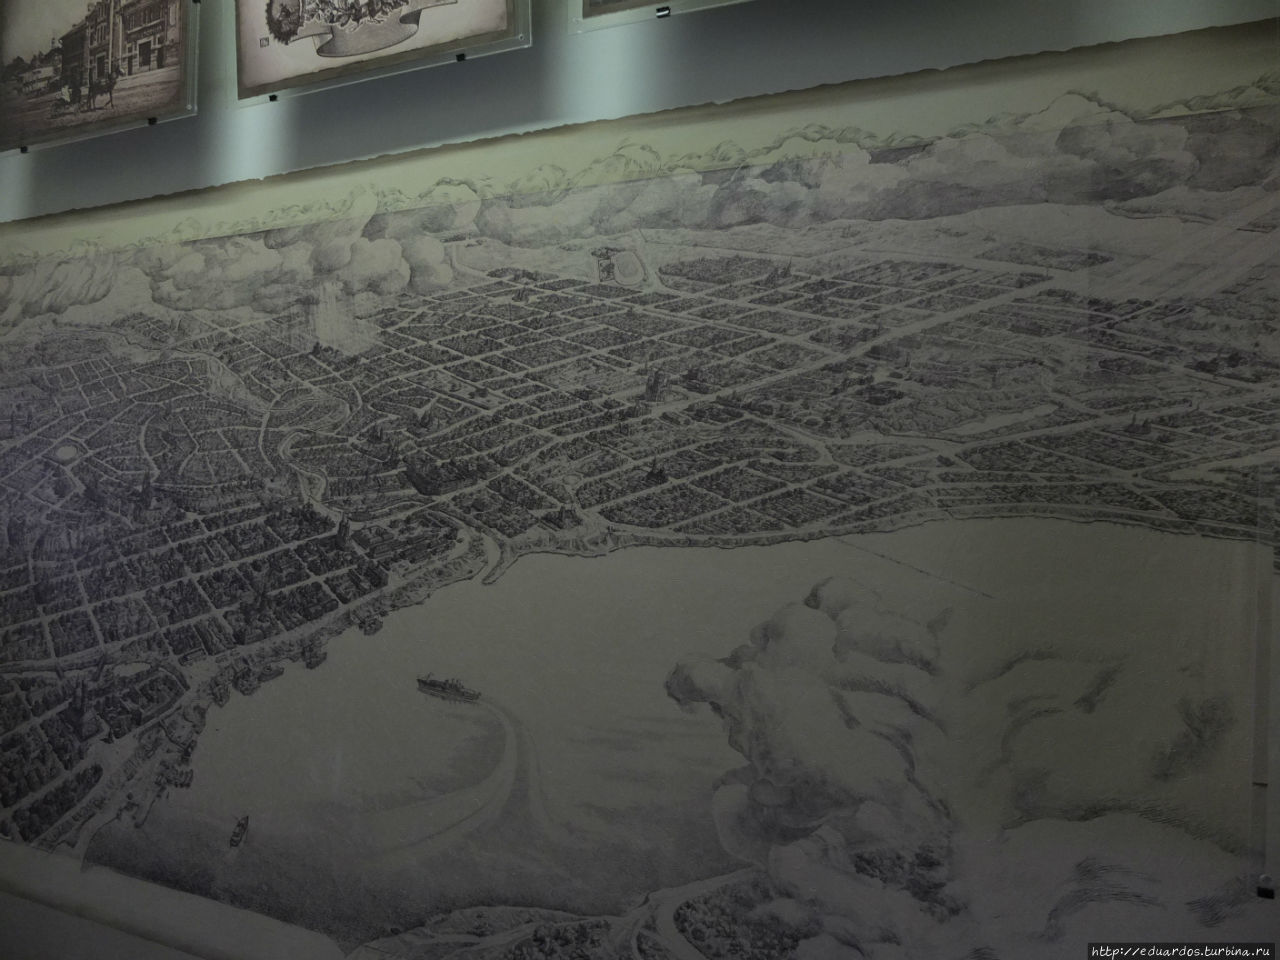 Один из художников нарисовал подробнейшую карту старого Томска, с точным количеством дверей, окон и прочих мельчайших деталей. Томск, Россия